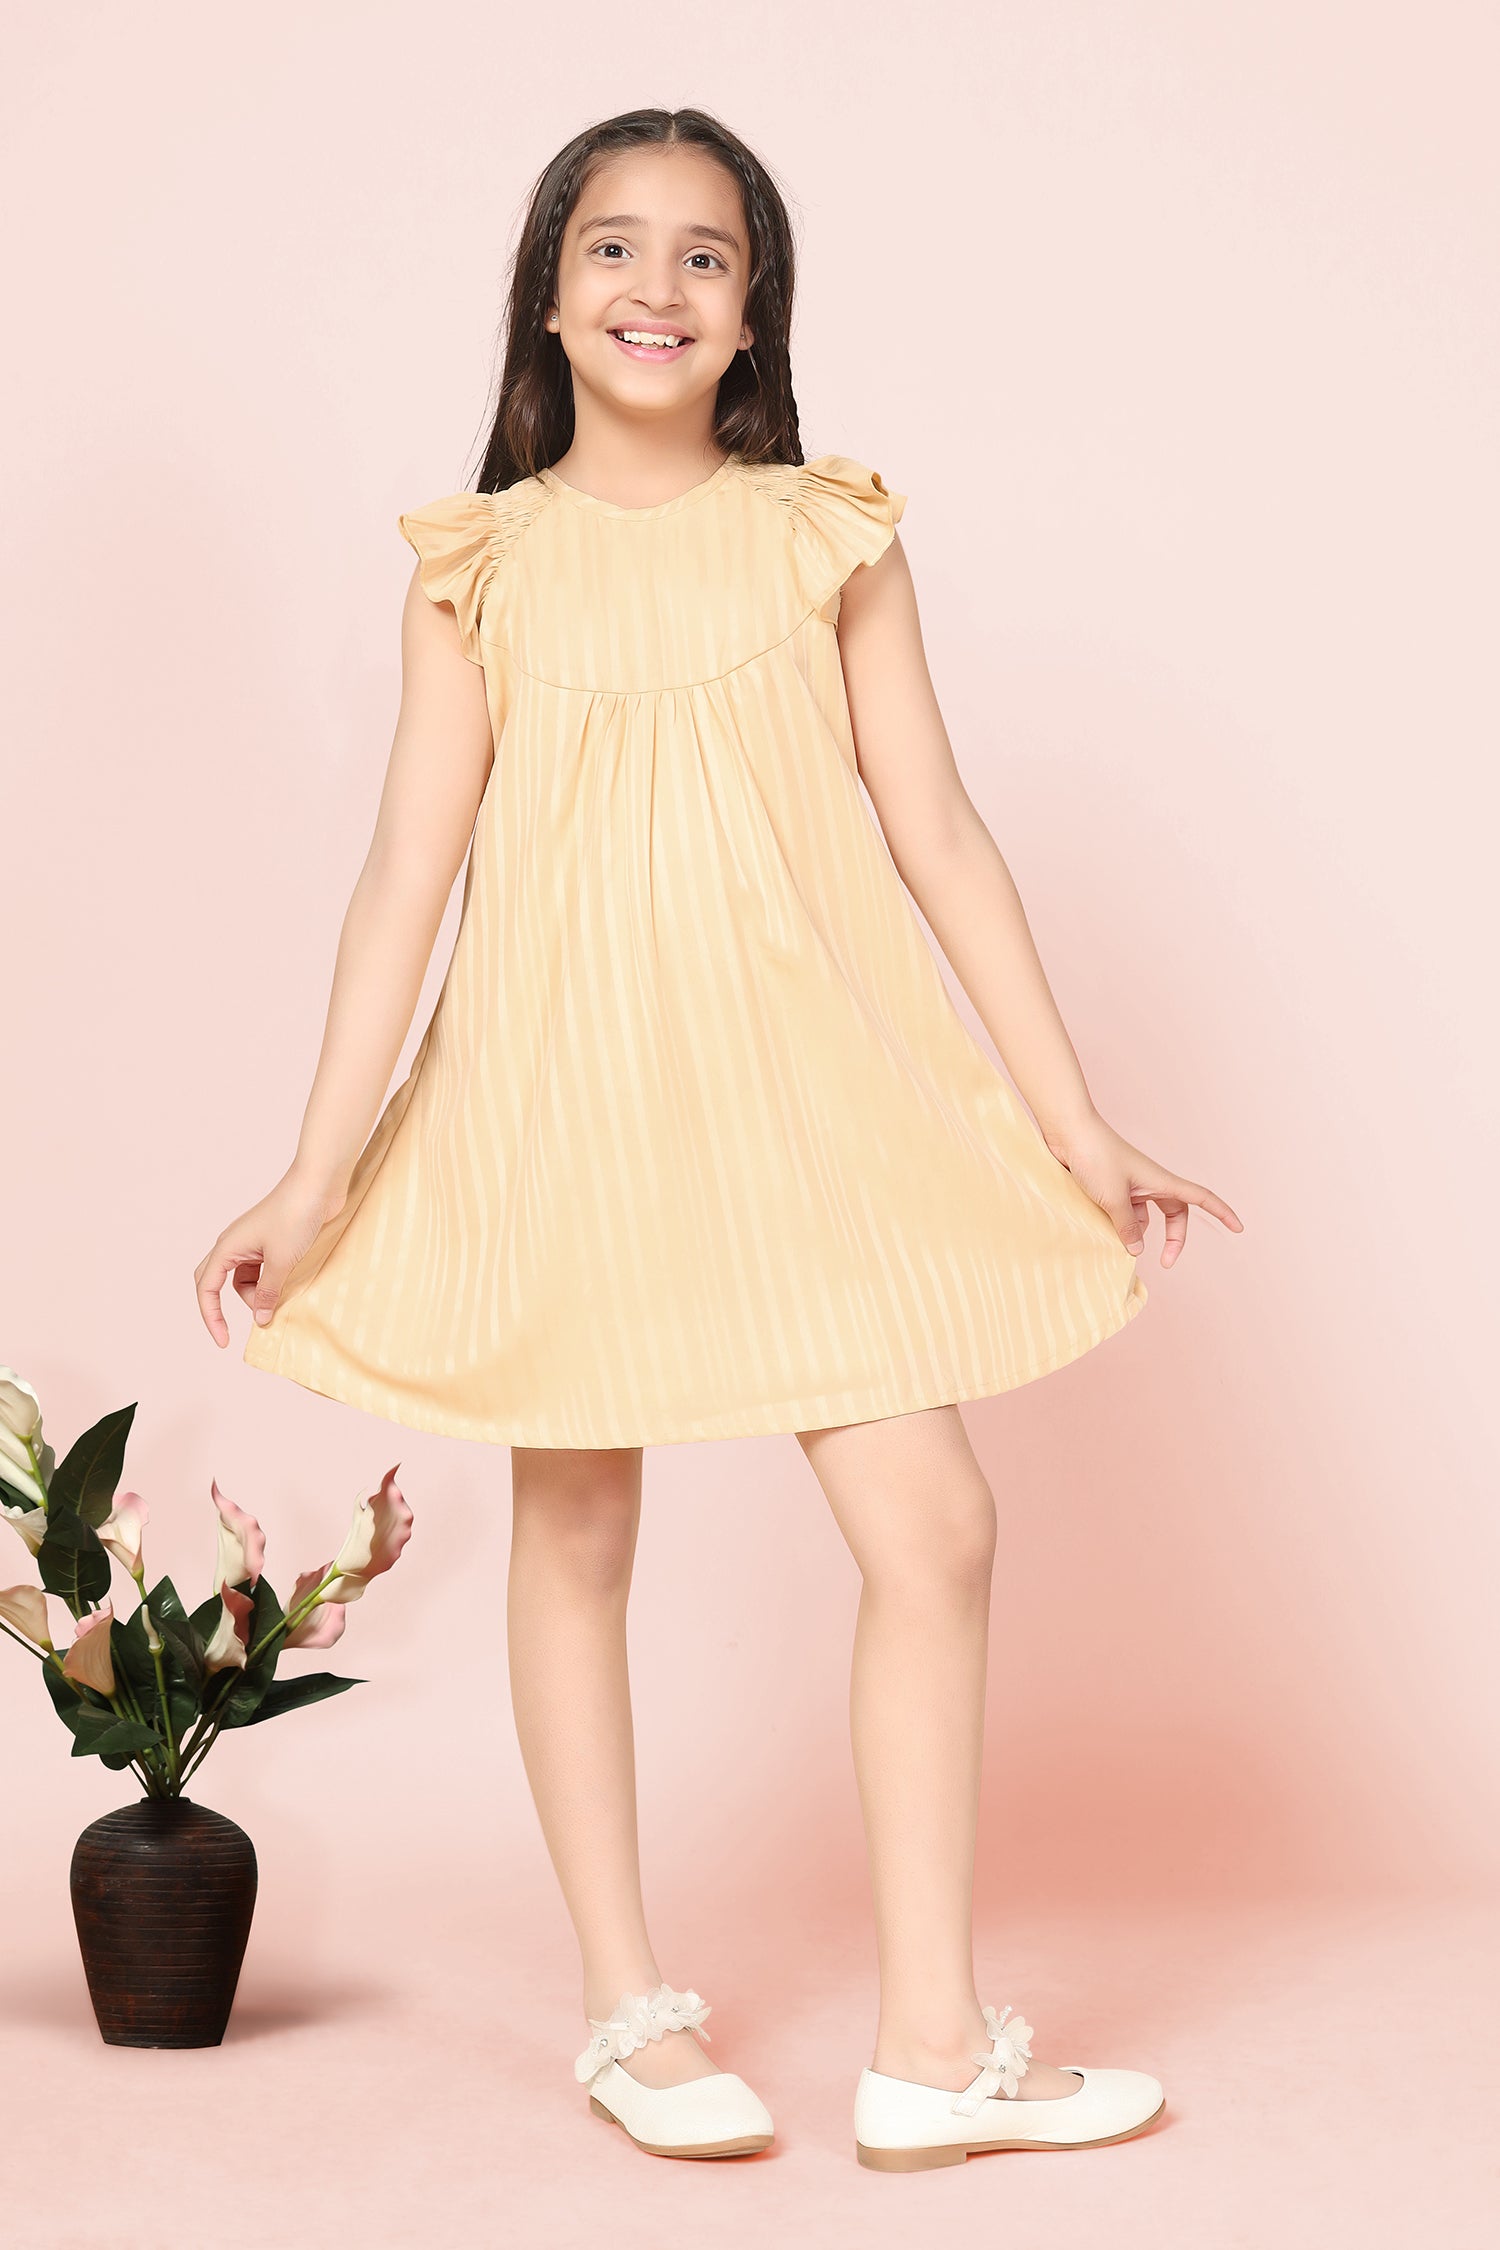 Buy kid girl dress | variety baby girl dresses online @ lovely wedding mall